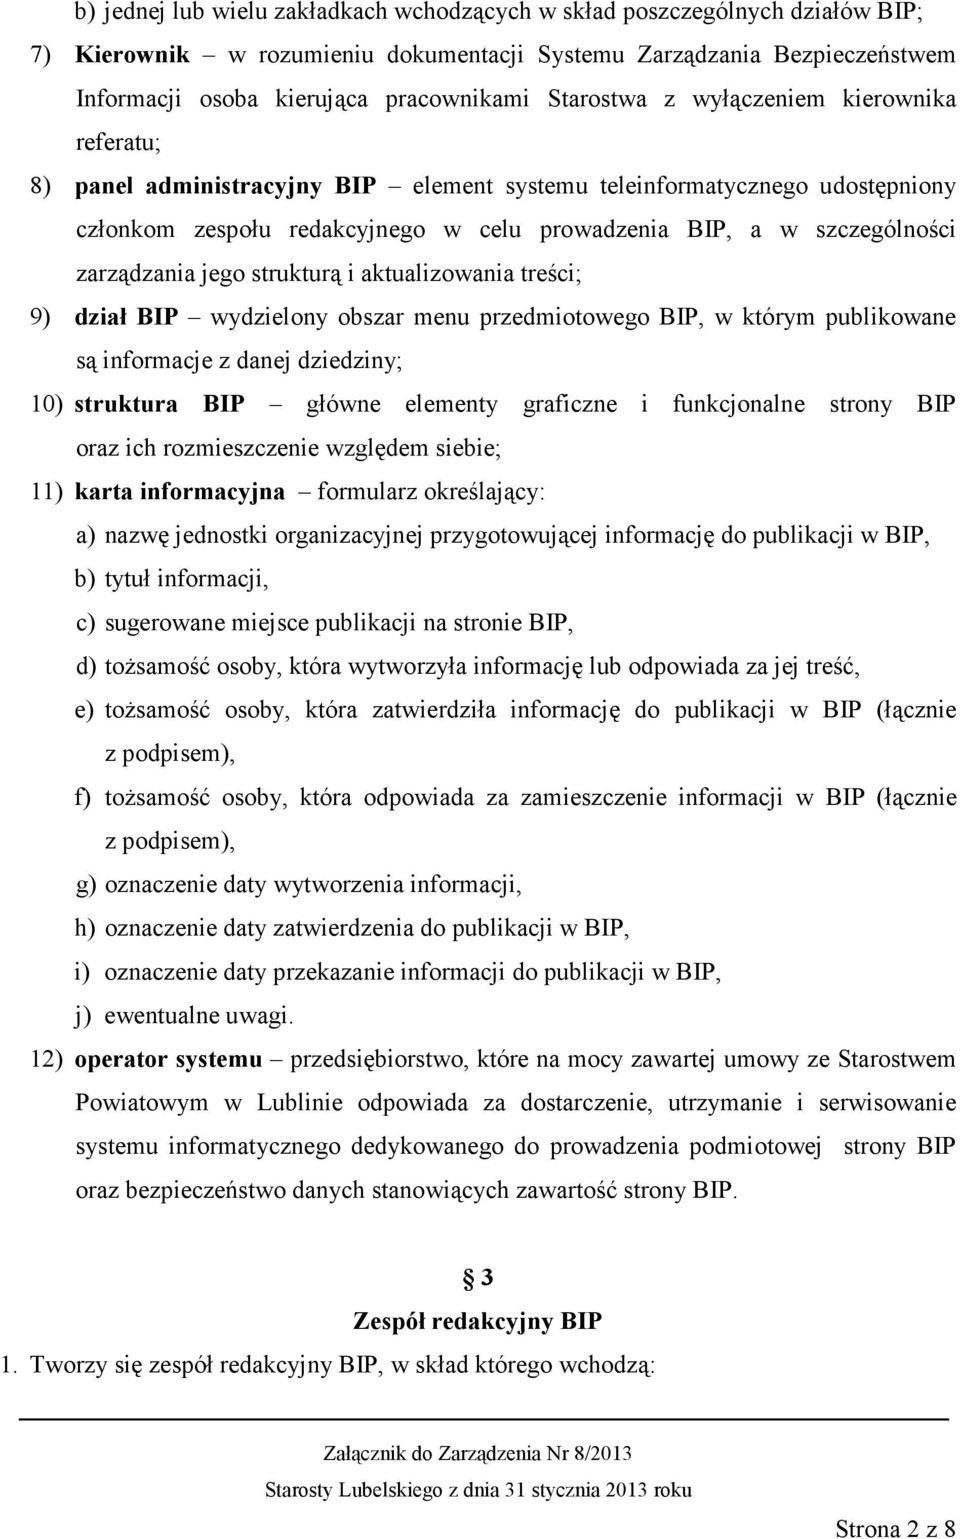 zarządzania jego strukturą i aktualizowania treści; 9) dział BIP wydzielony obszar menu przedmiotowego BIP, w którym publikowane są informacje z danej dziedziny; 10) struktura BIP główne elementy